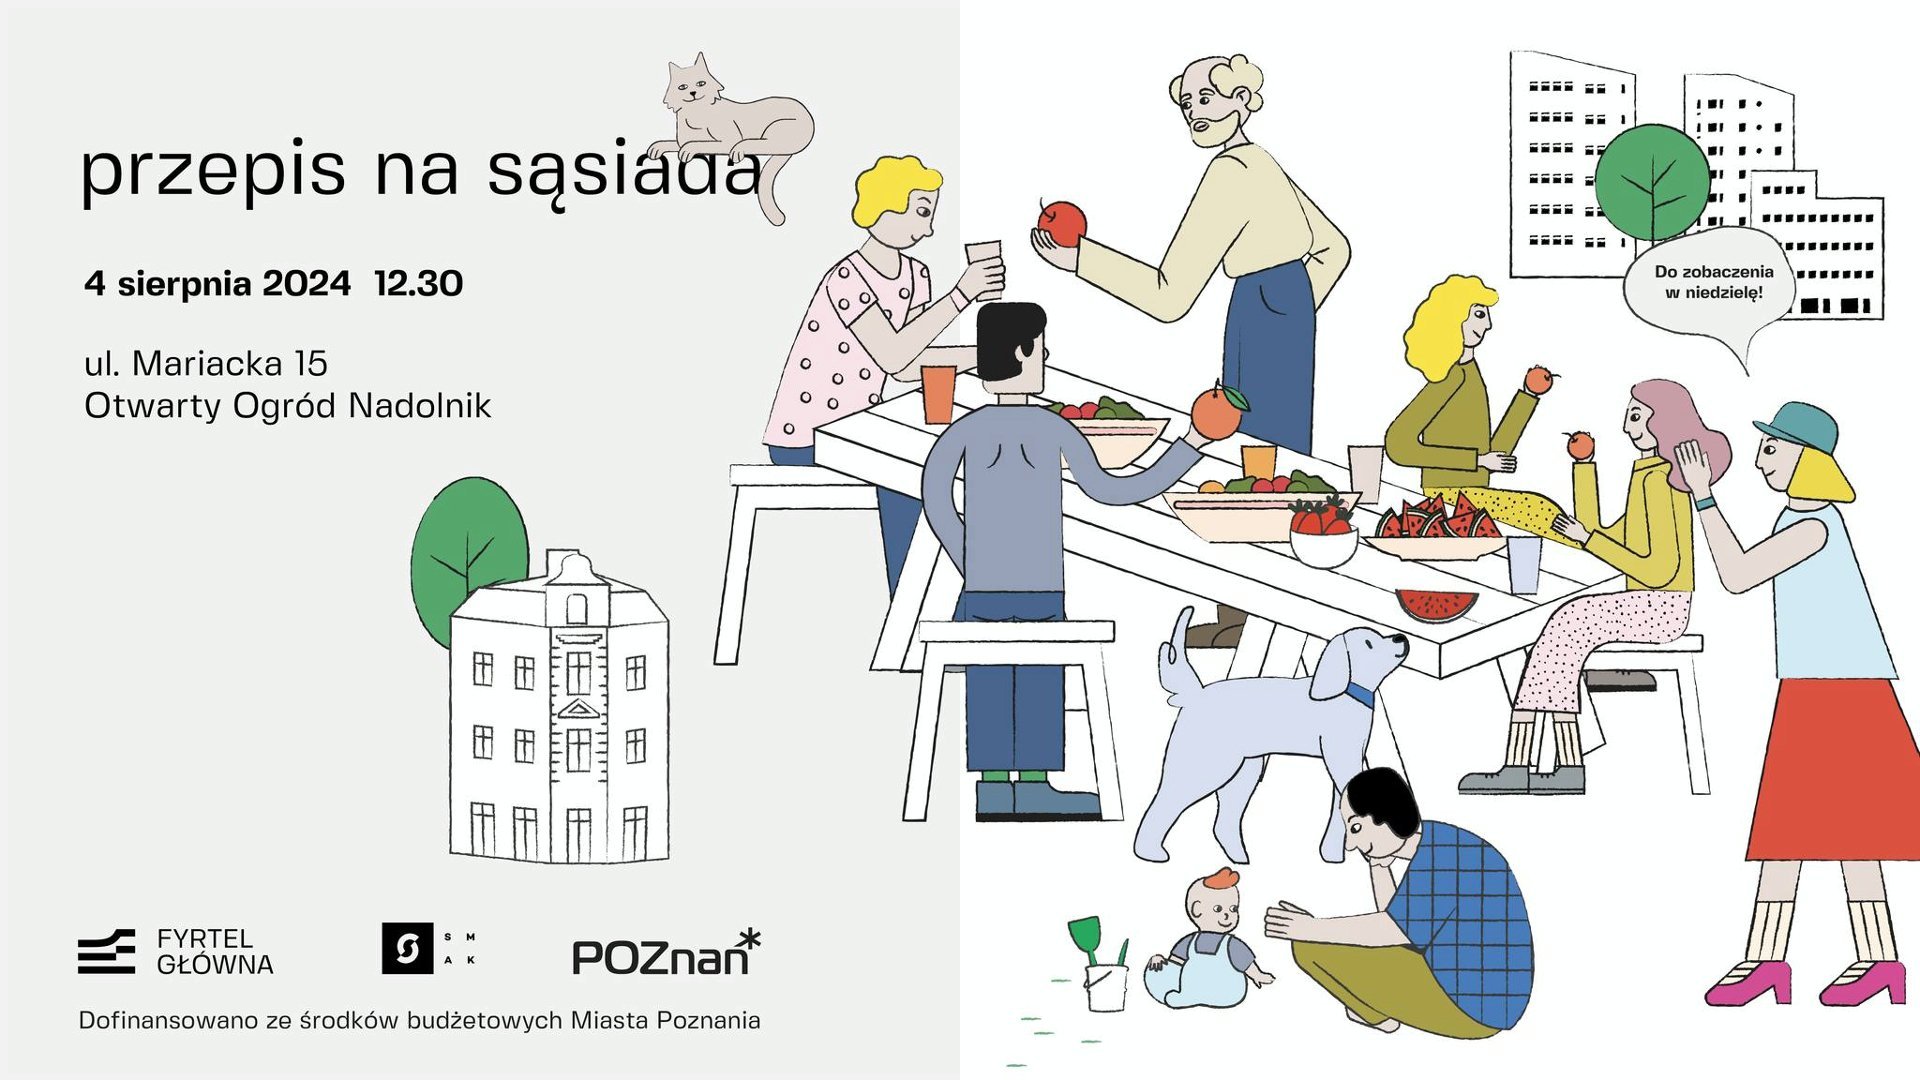 Plakat z informacjami o wydarzeniu. Przedstawia rysunek ludzi przy stole z jedzeniem.